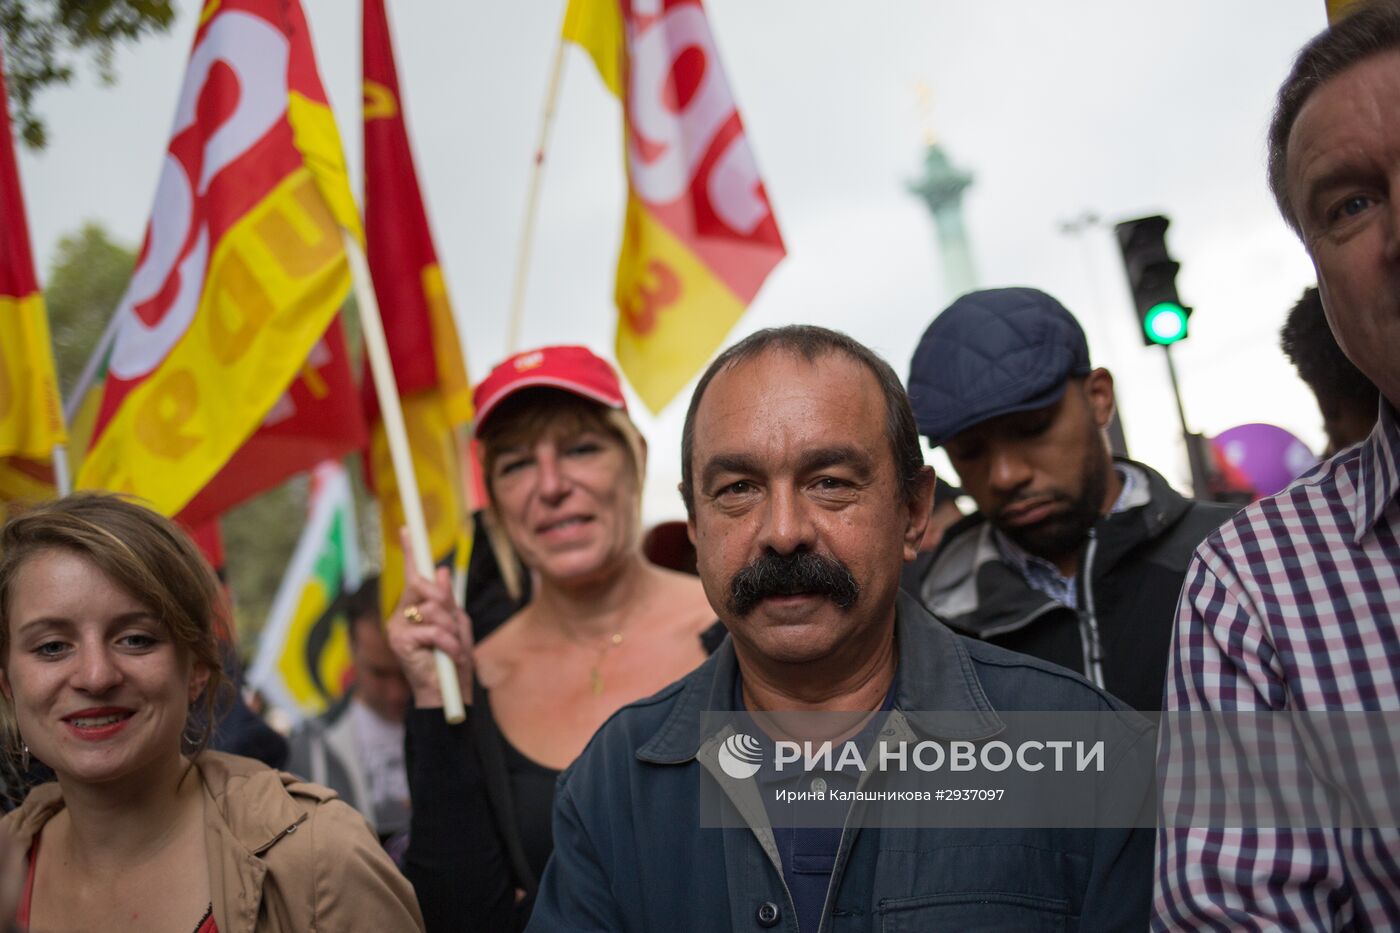 Манифестация противников реформы трудового законодательства в Париже